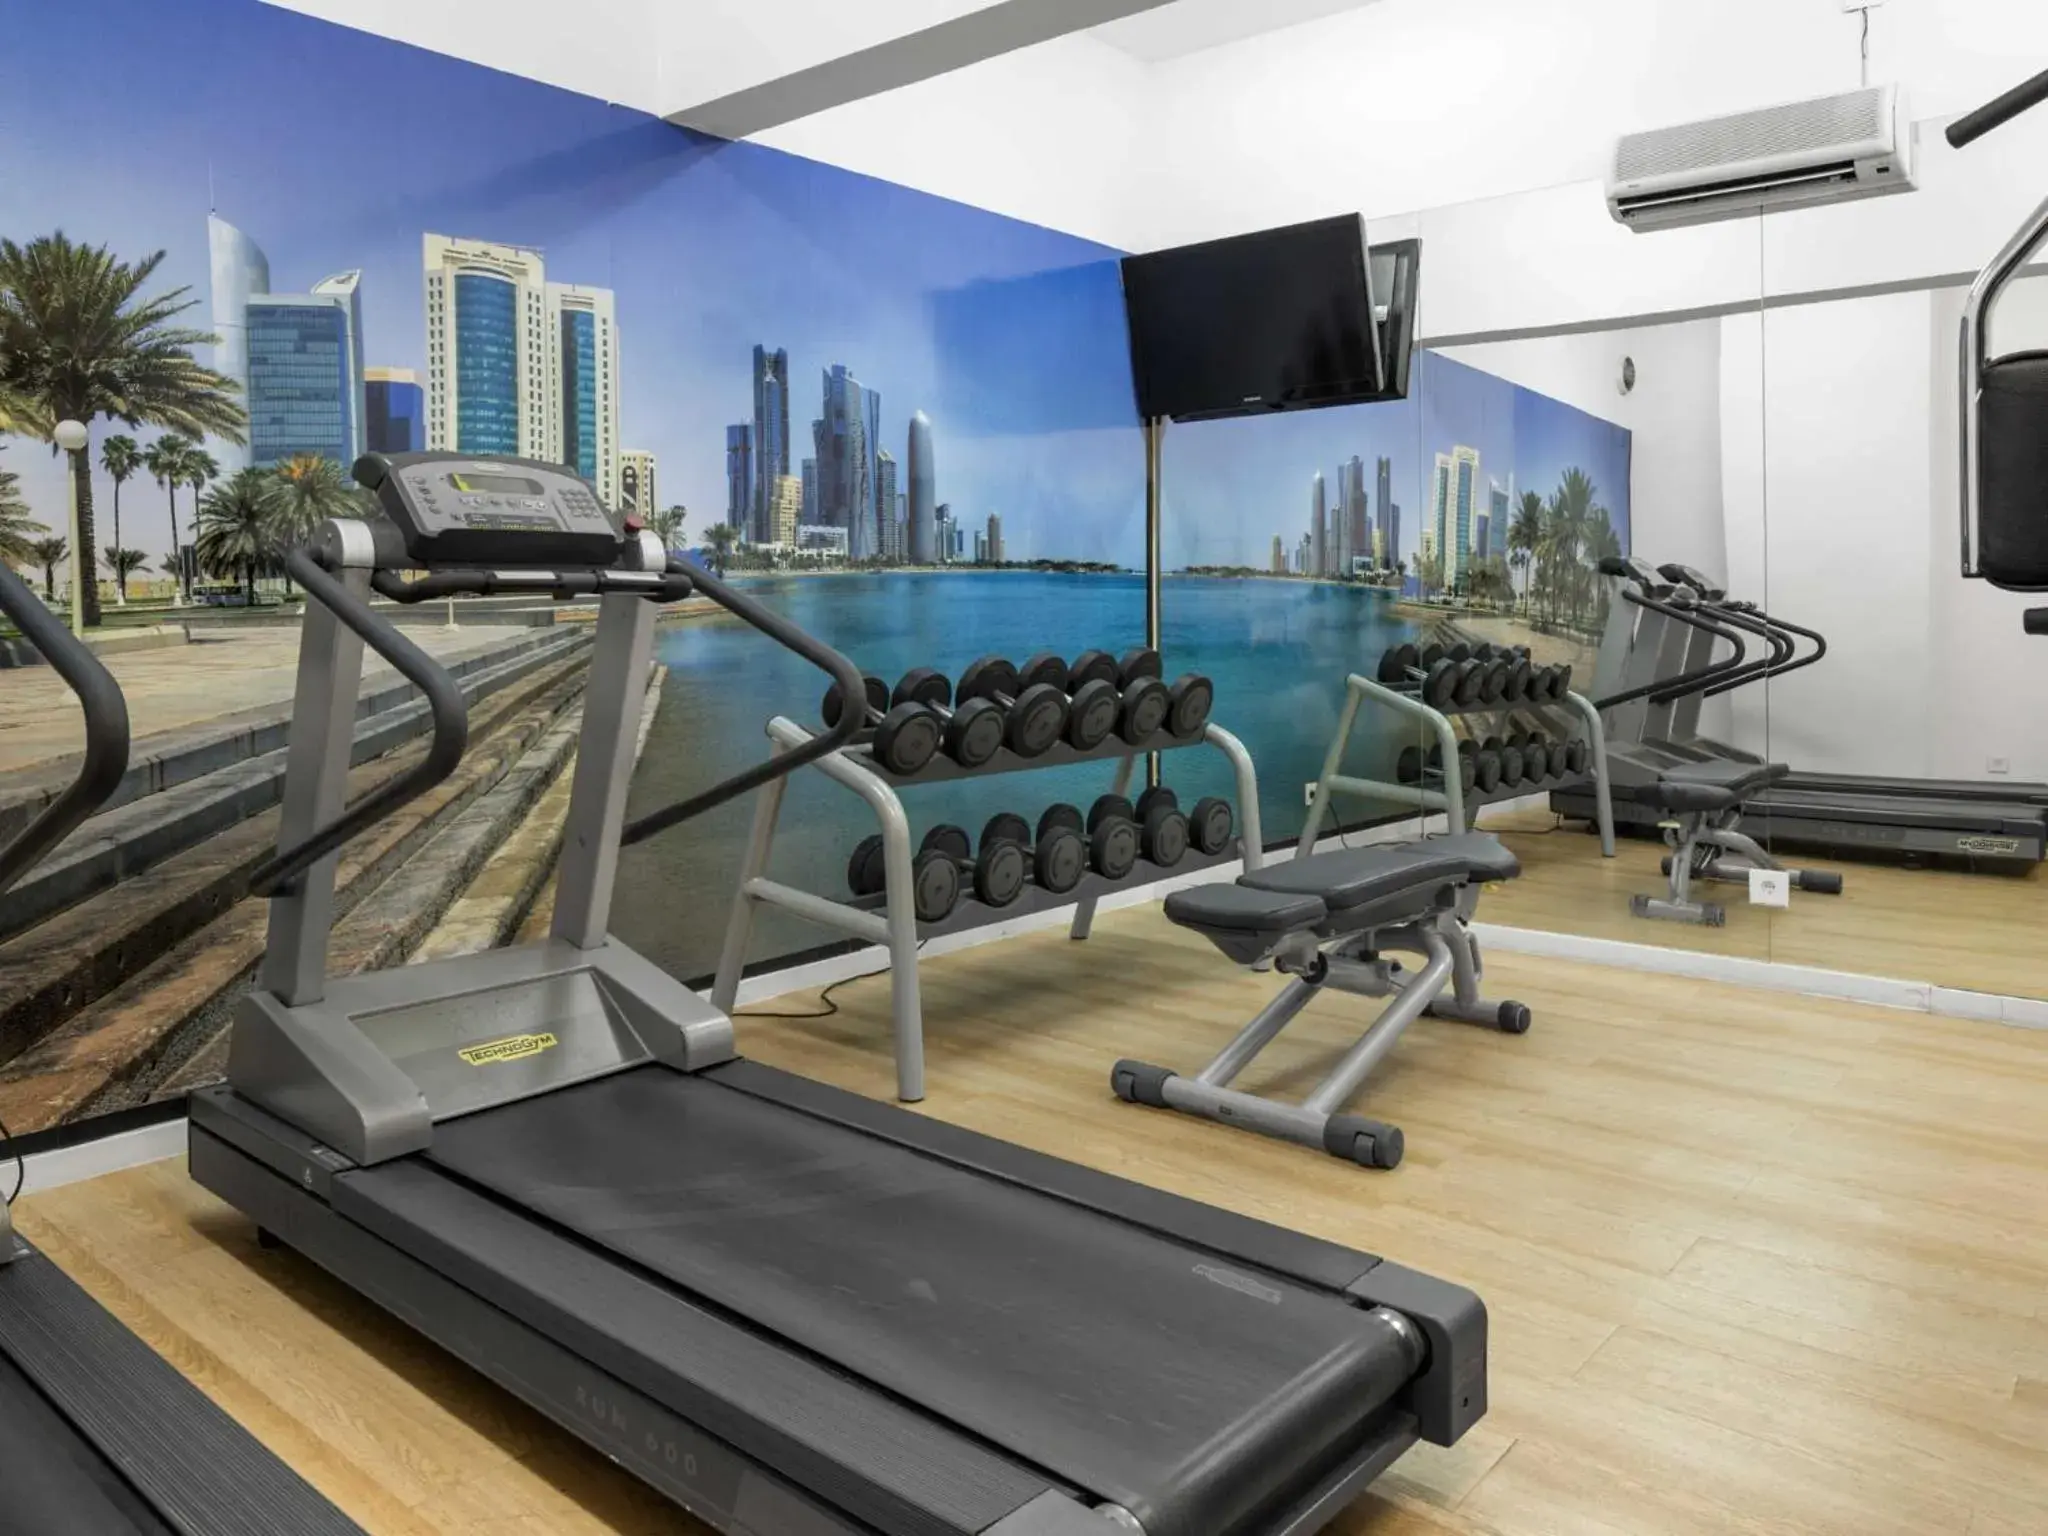 Fitness centre/facilities, Fitness Center/Facilities in Tivoli Maputo